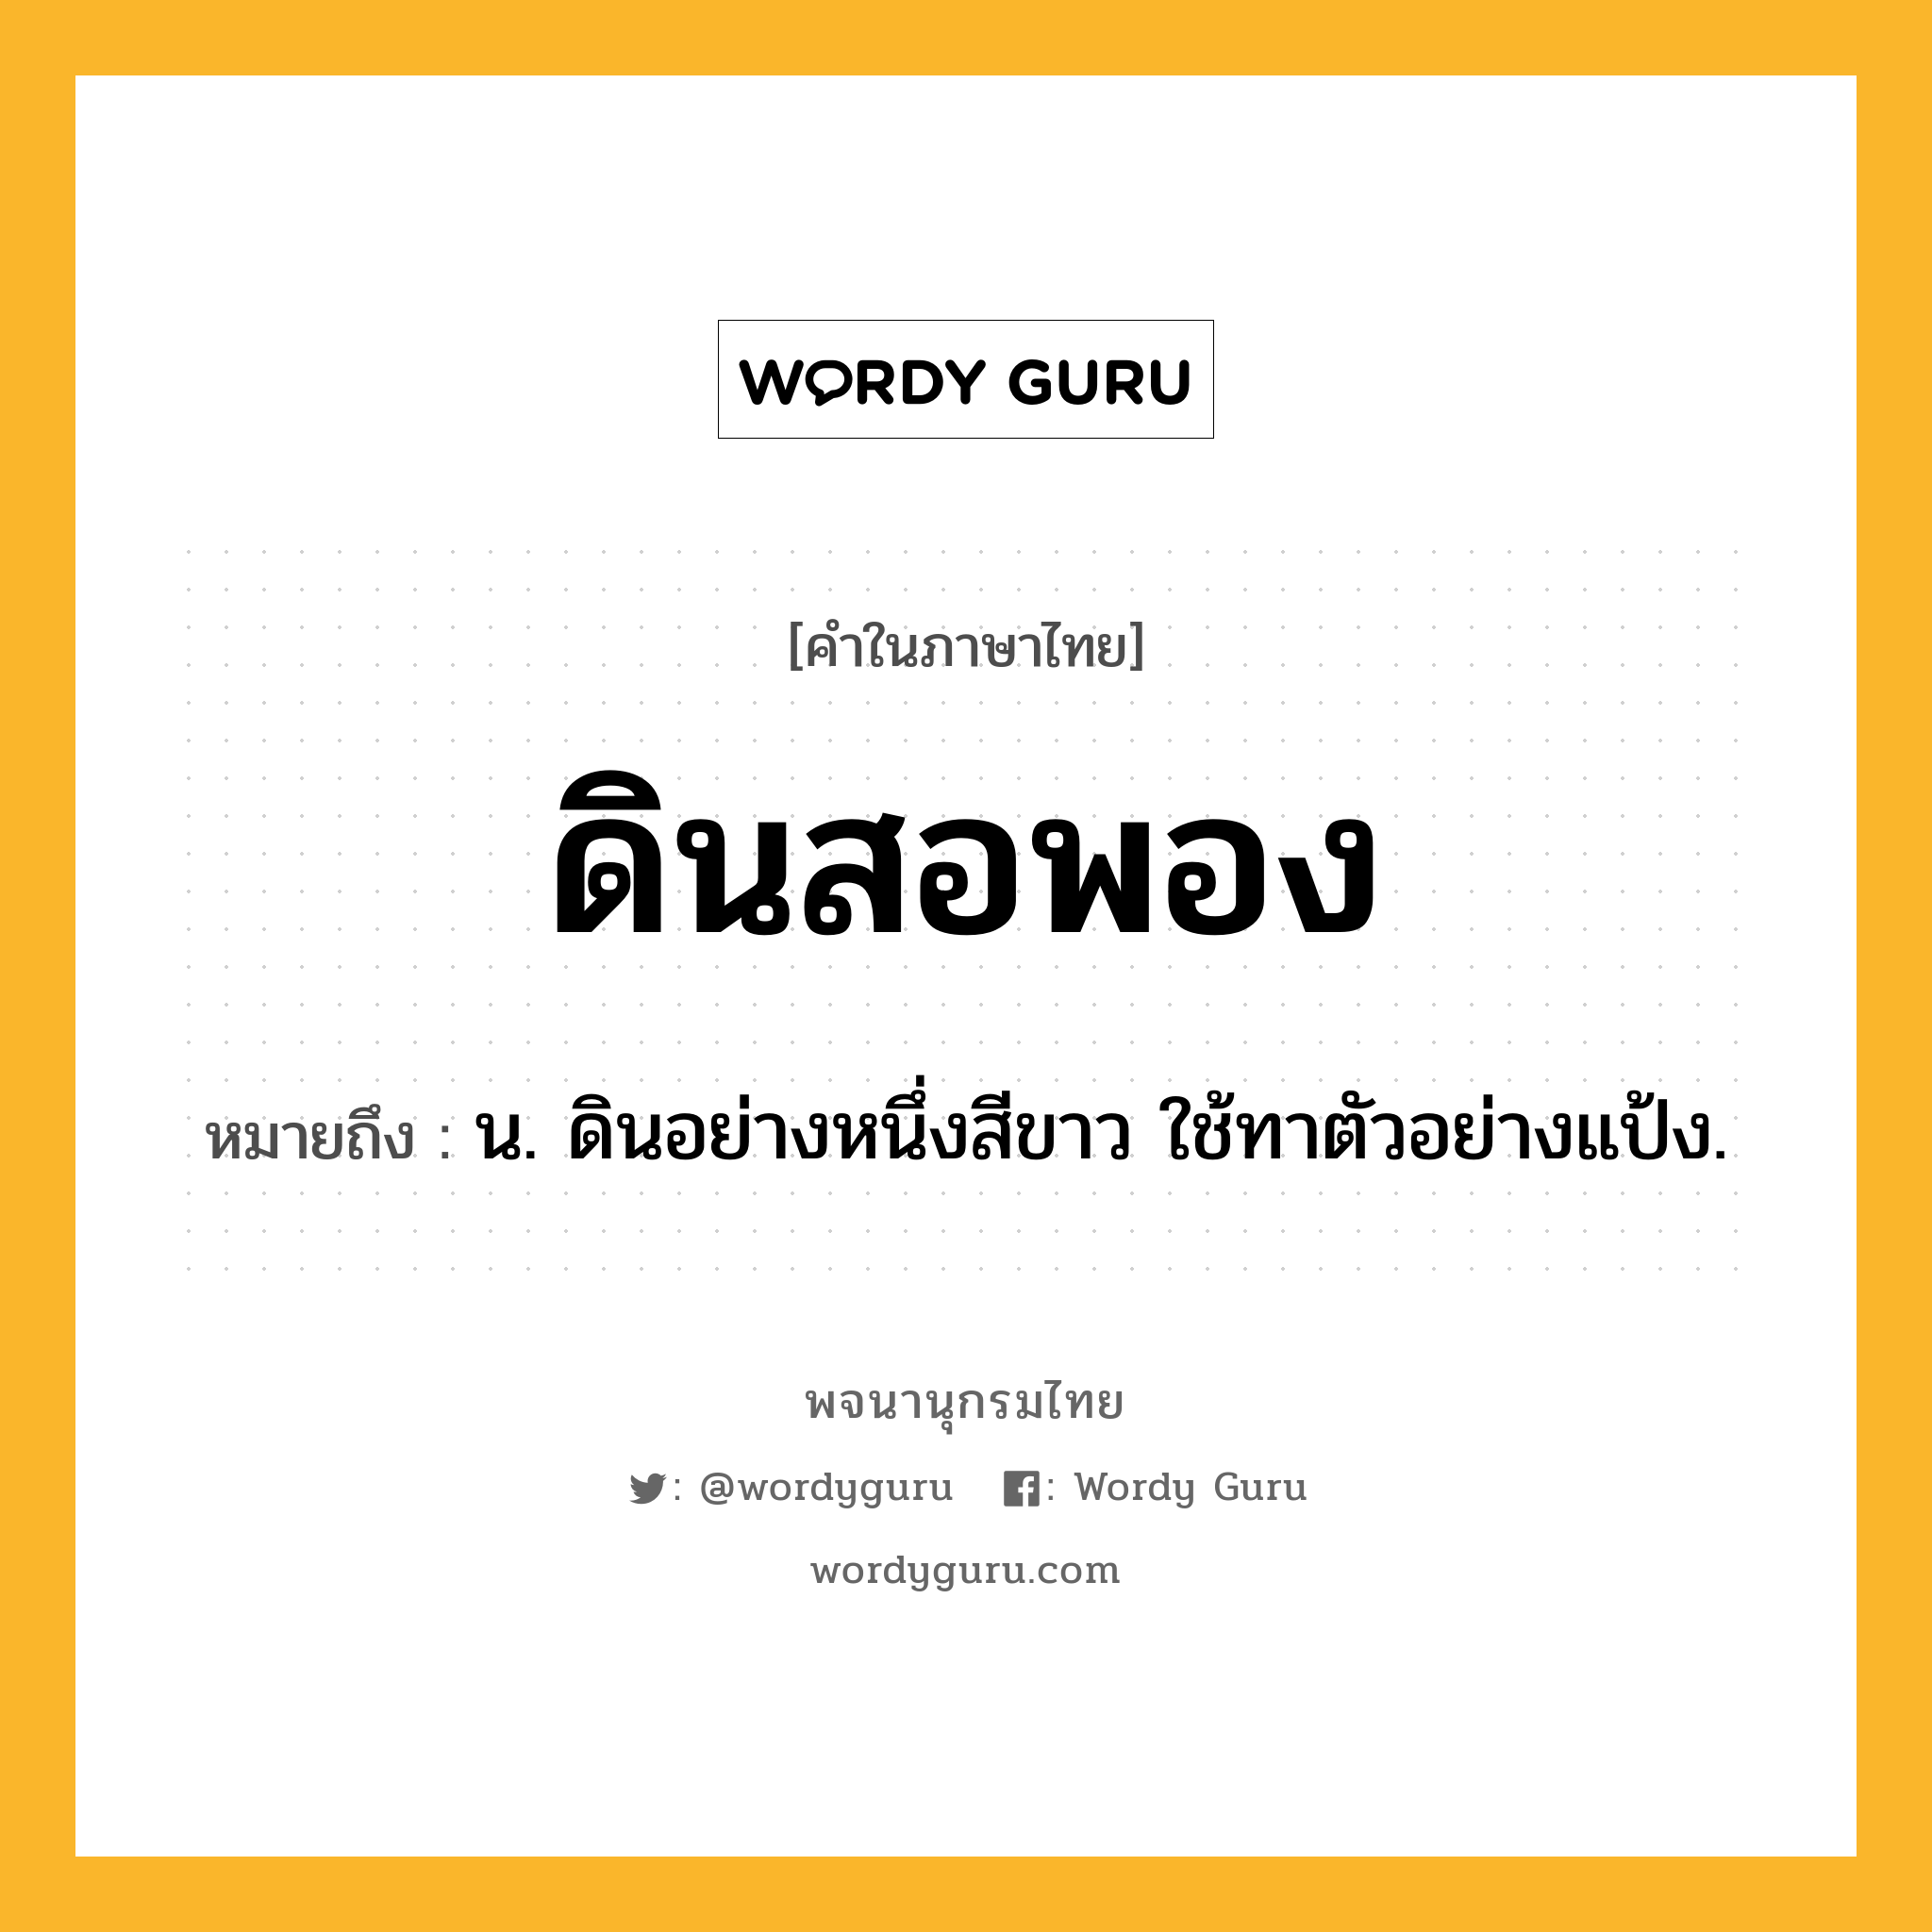 ดินสอพอง หมายถึงอะไร?, คำในภาษาไทย ดินสอพอง หมายถึง น. ดินอย่างหนึ่งสีขาว ใช้ทาตัวอย่างแป้ง.